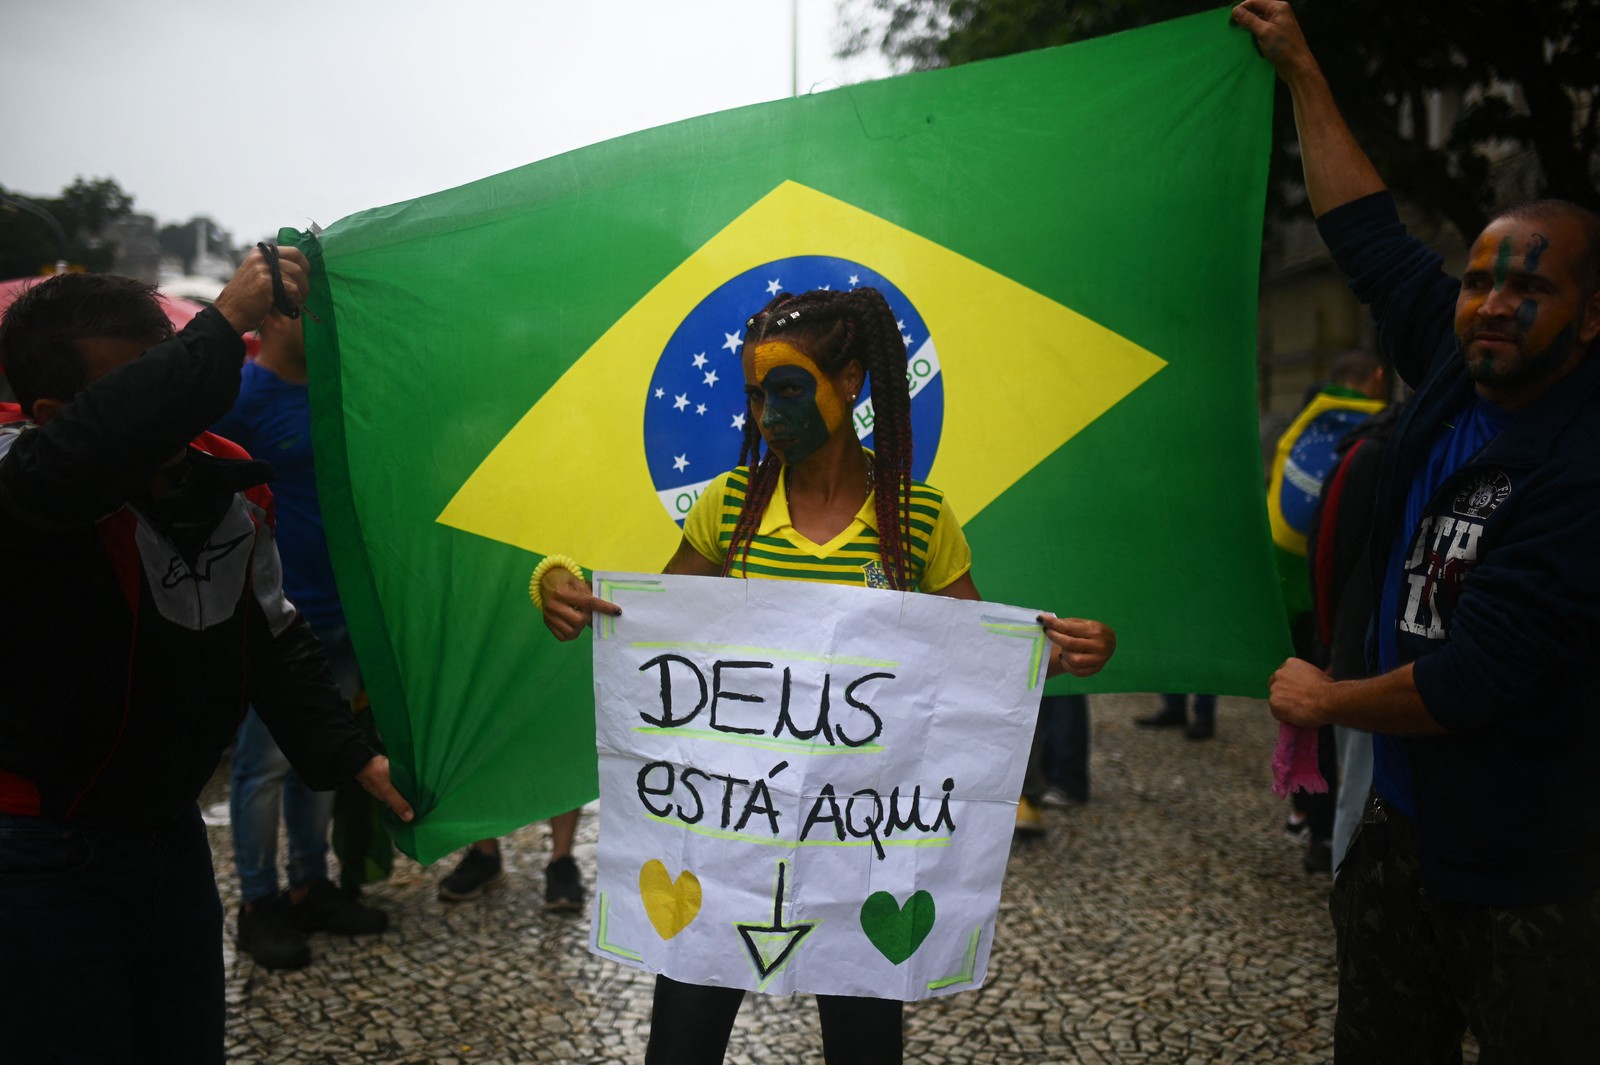 Apoiadora do presidente exibe cartaz que diz "Deus está aqui" — Foto: André Borges / AFP